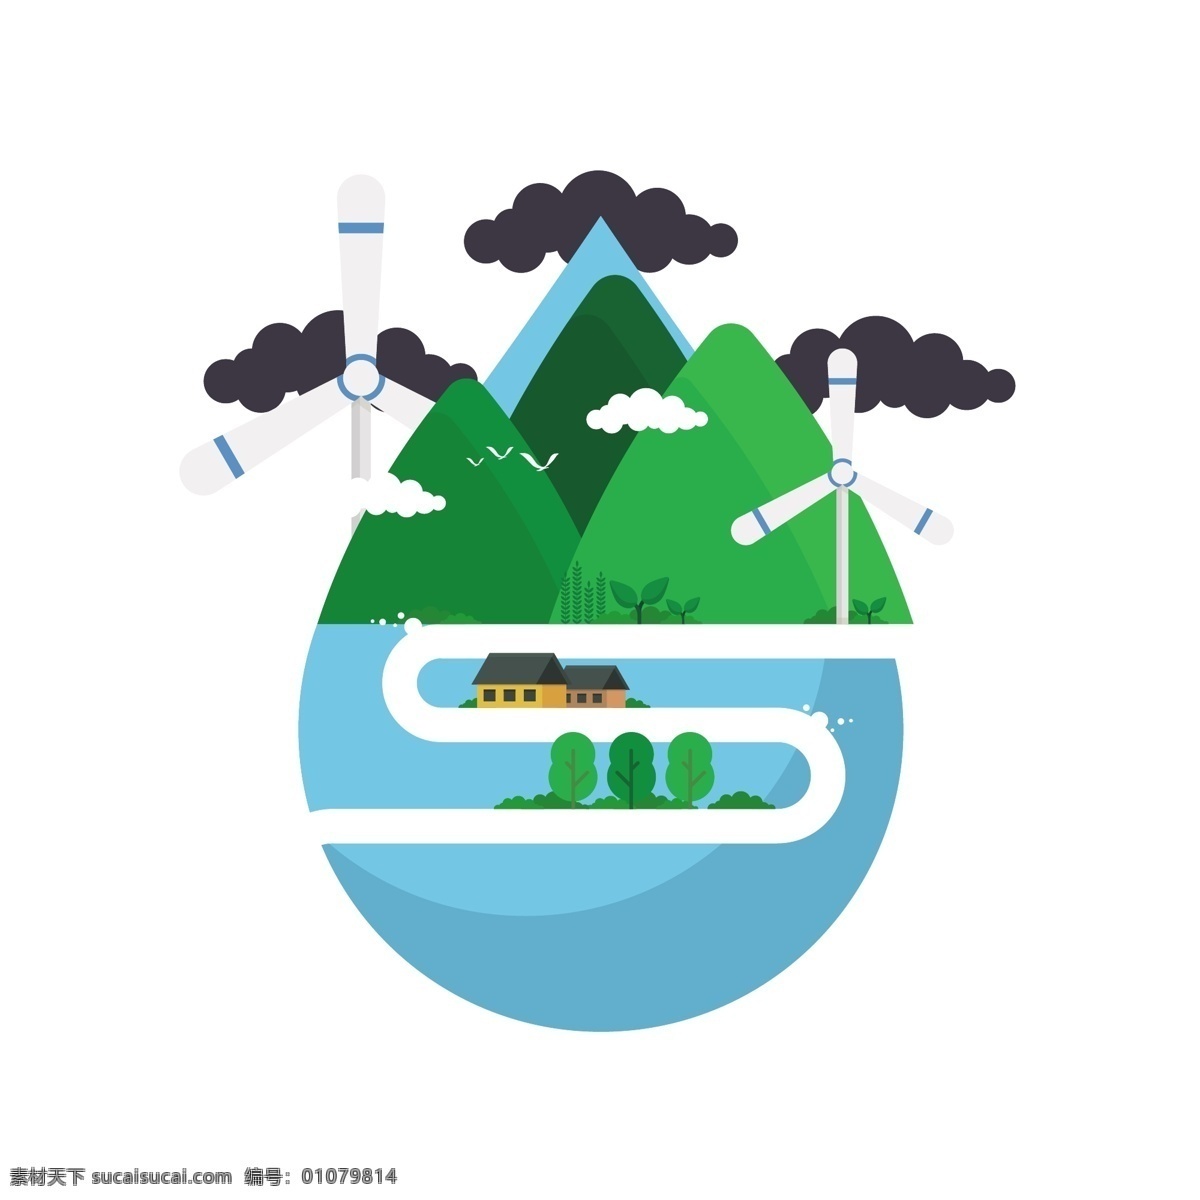 扁平化 保护 水资源 矢量 扁平化风格 保护环境 保护水资源 绿色森林 蓝色水源 风力车 发电风力车 环境保护